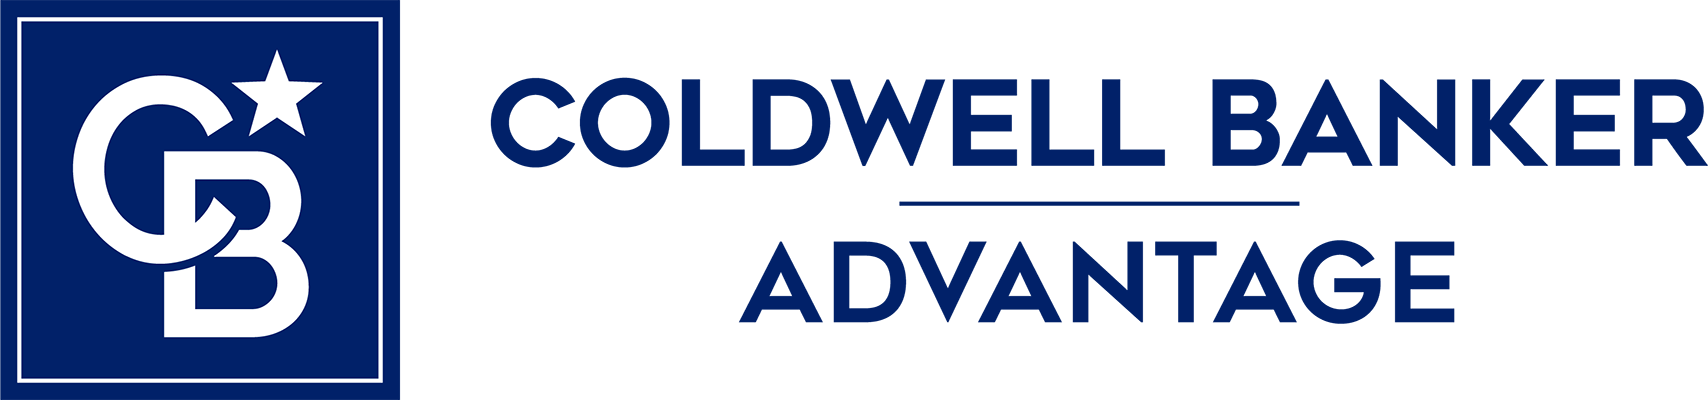 Lynette Cox - Coldwell Banker Advantage Logo